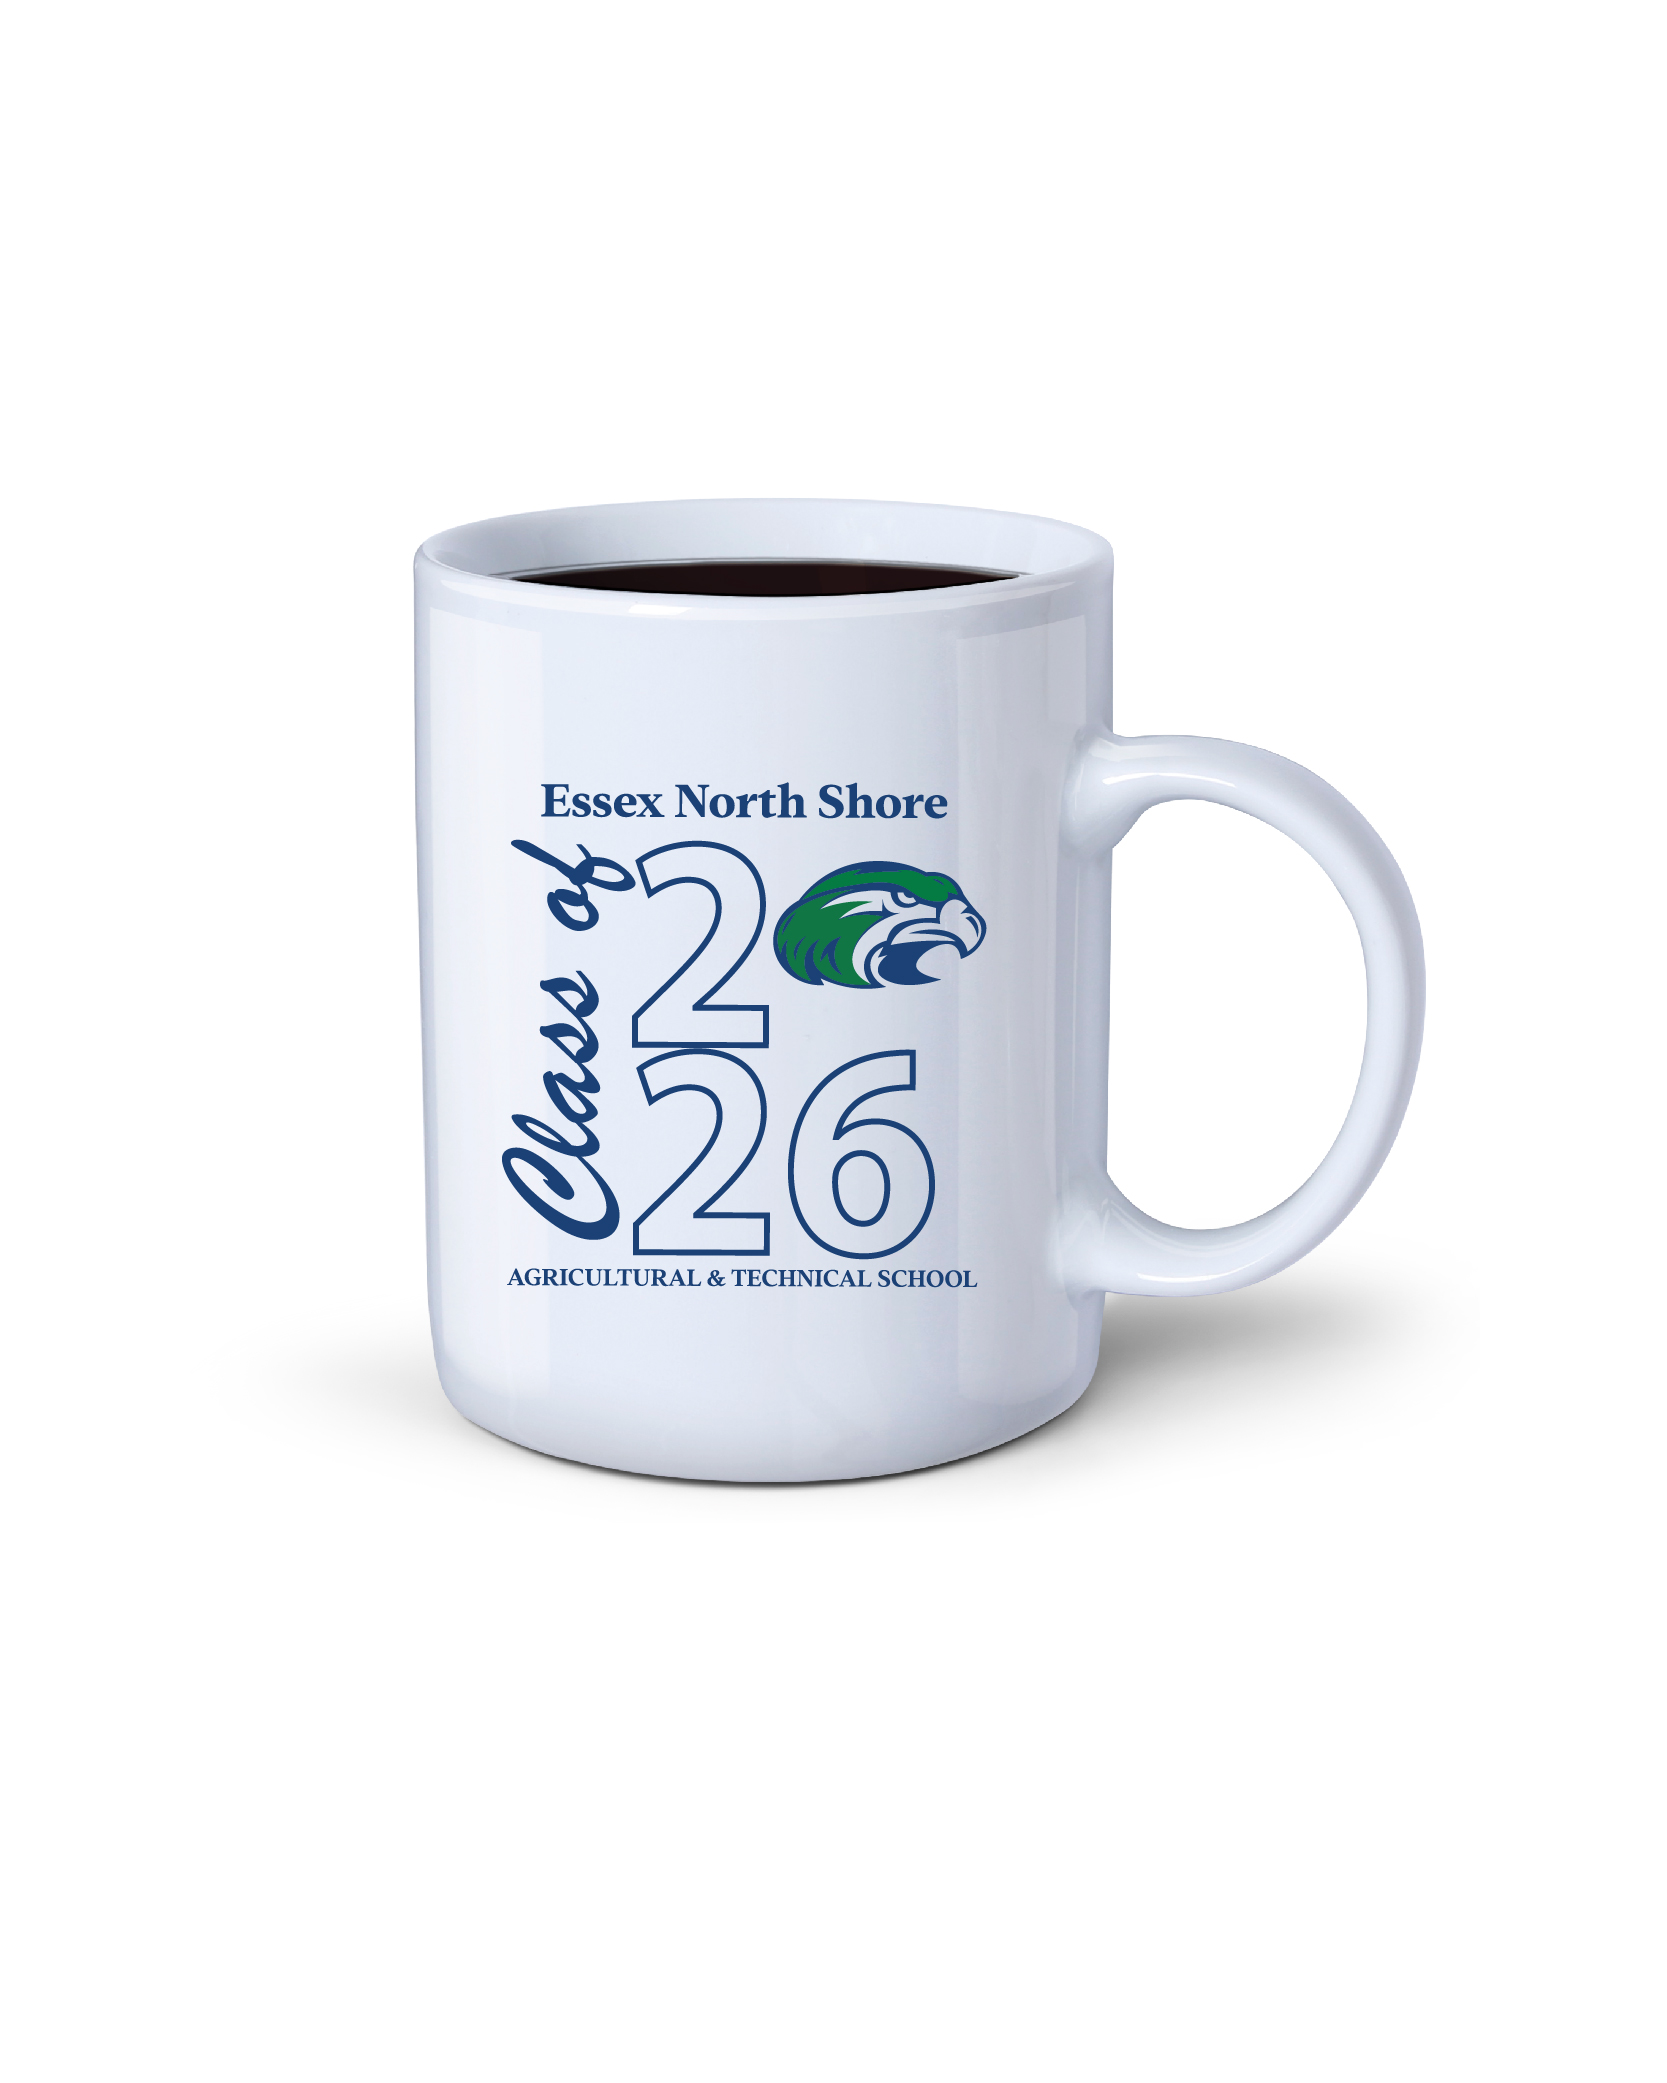 Essex North Shore PTO CLASS OF 2026 11 OZ COFFEE MUG